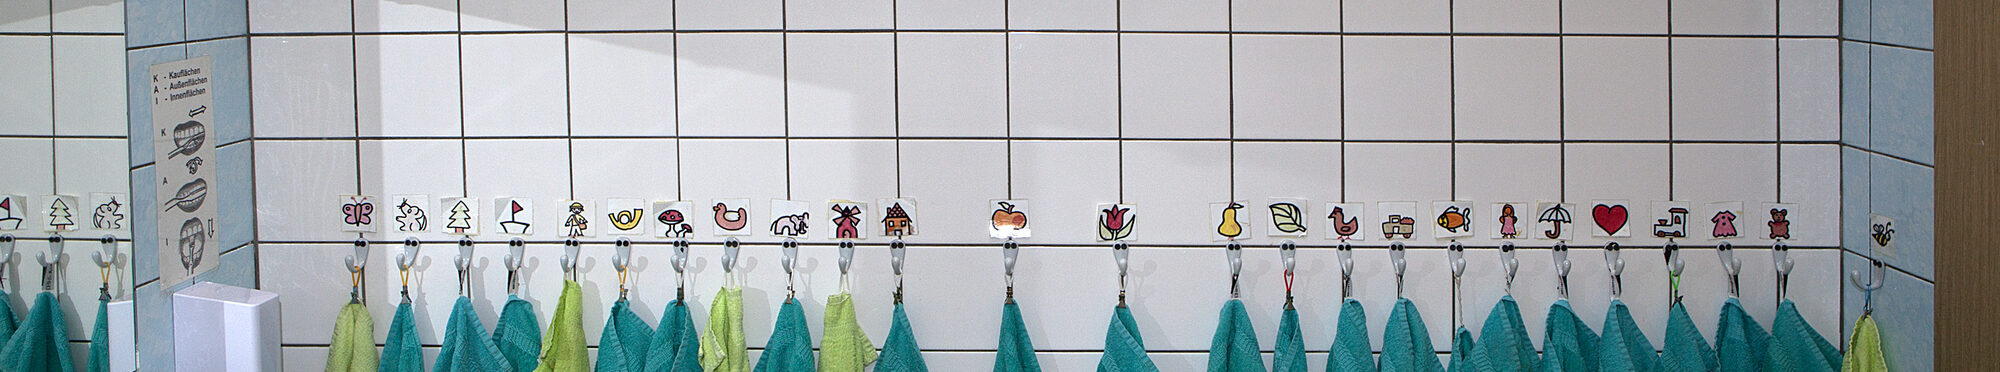 Kindergartenbad: Viele Zahnputzbecher und Handtücher mit Symbolen zur Erkennung, links ein Waschbecken. Oben auf dem Regal ein Demo-Gebiss